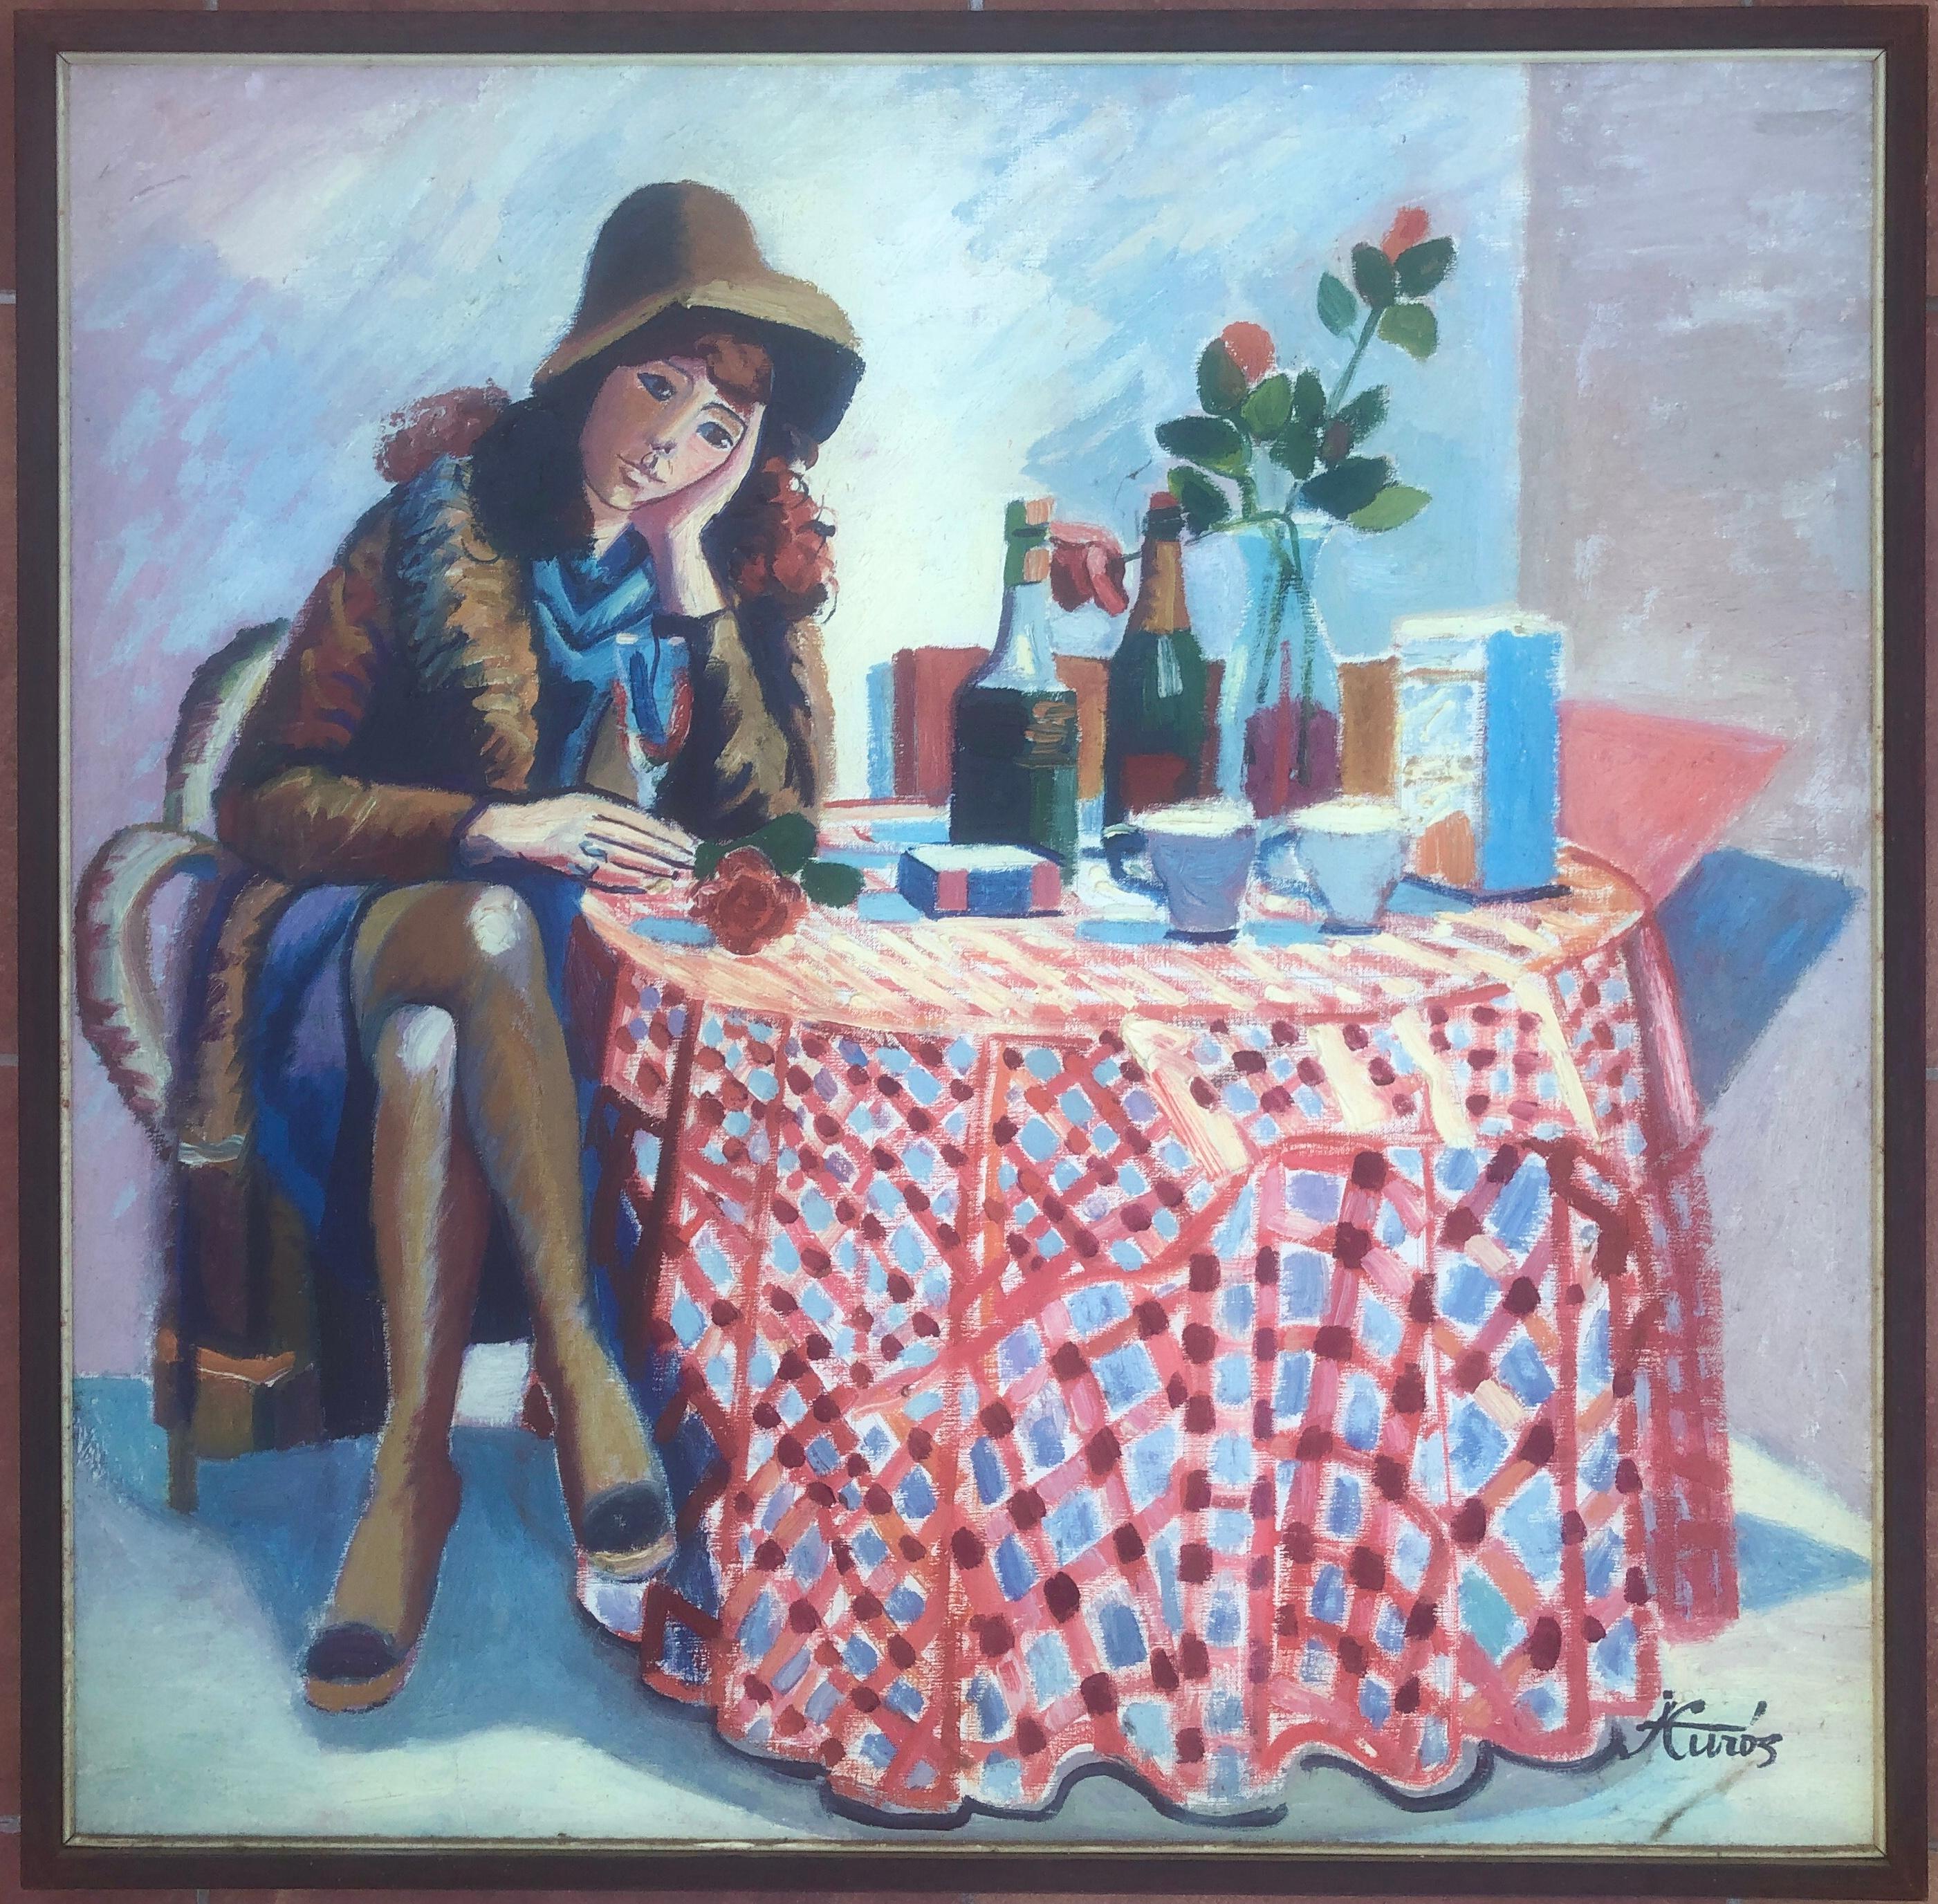 Femme assise et nature morte huile sur toile - Painting de Jordi Curos